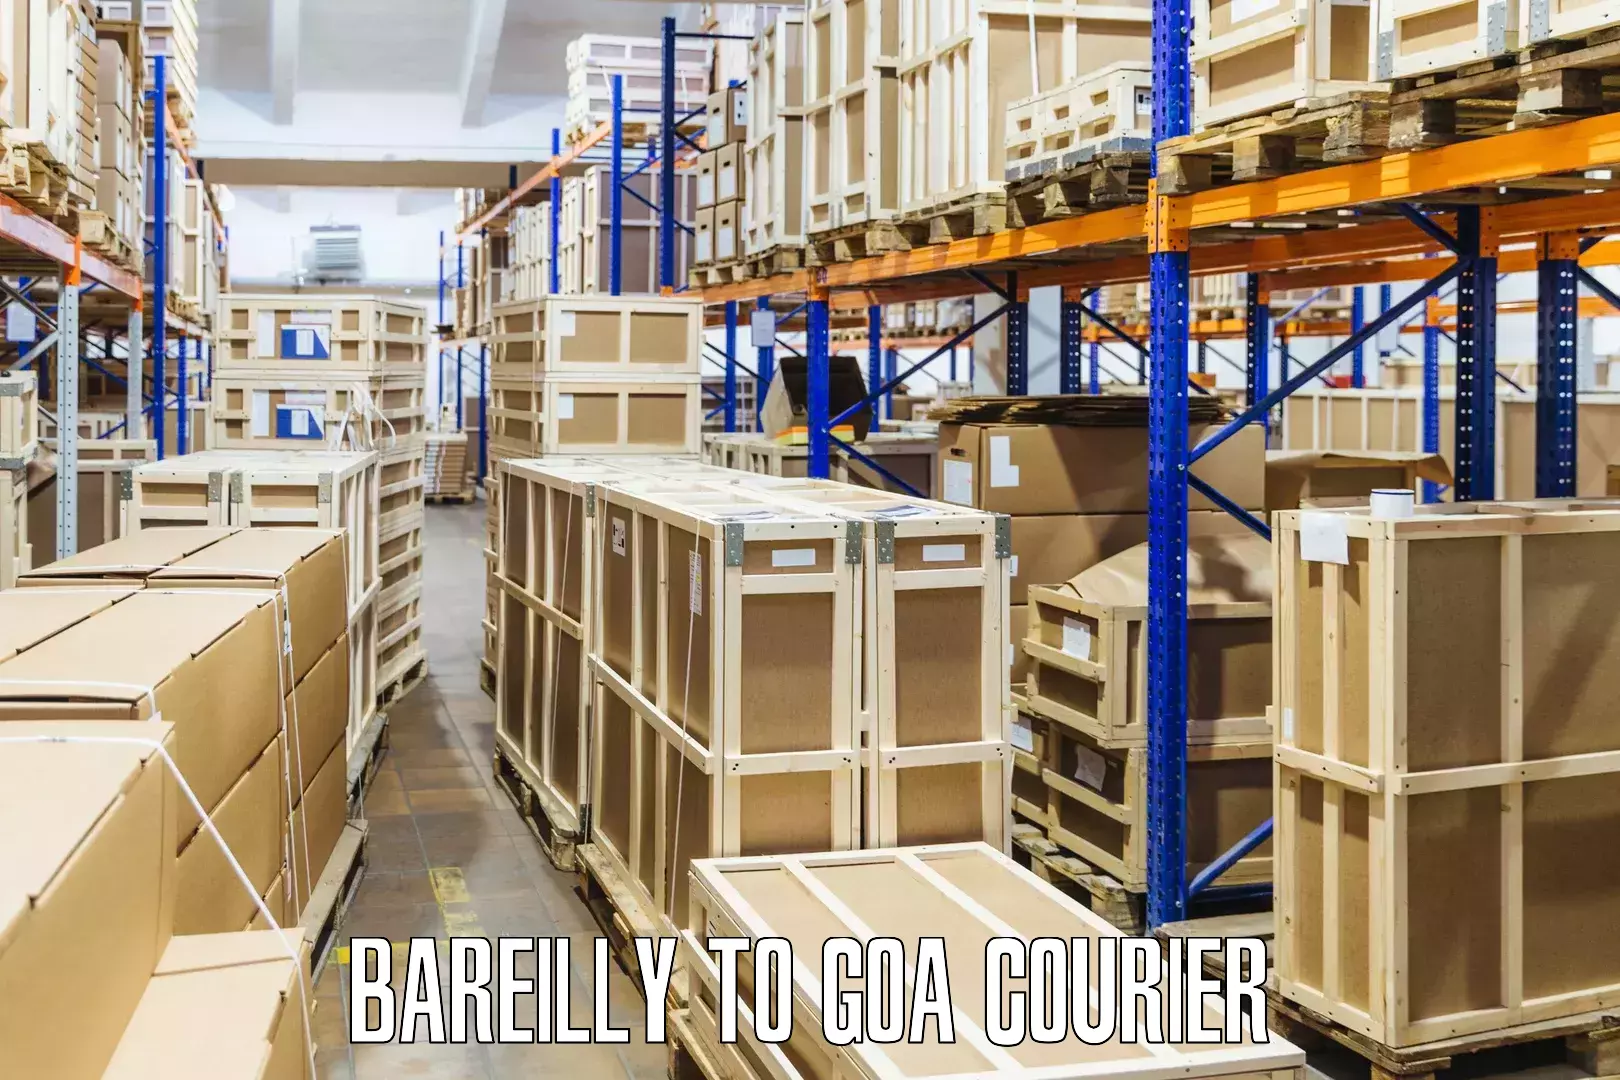 Courier app Bareilly to Goa